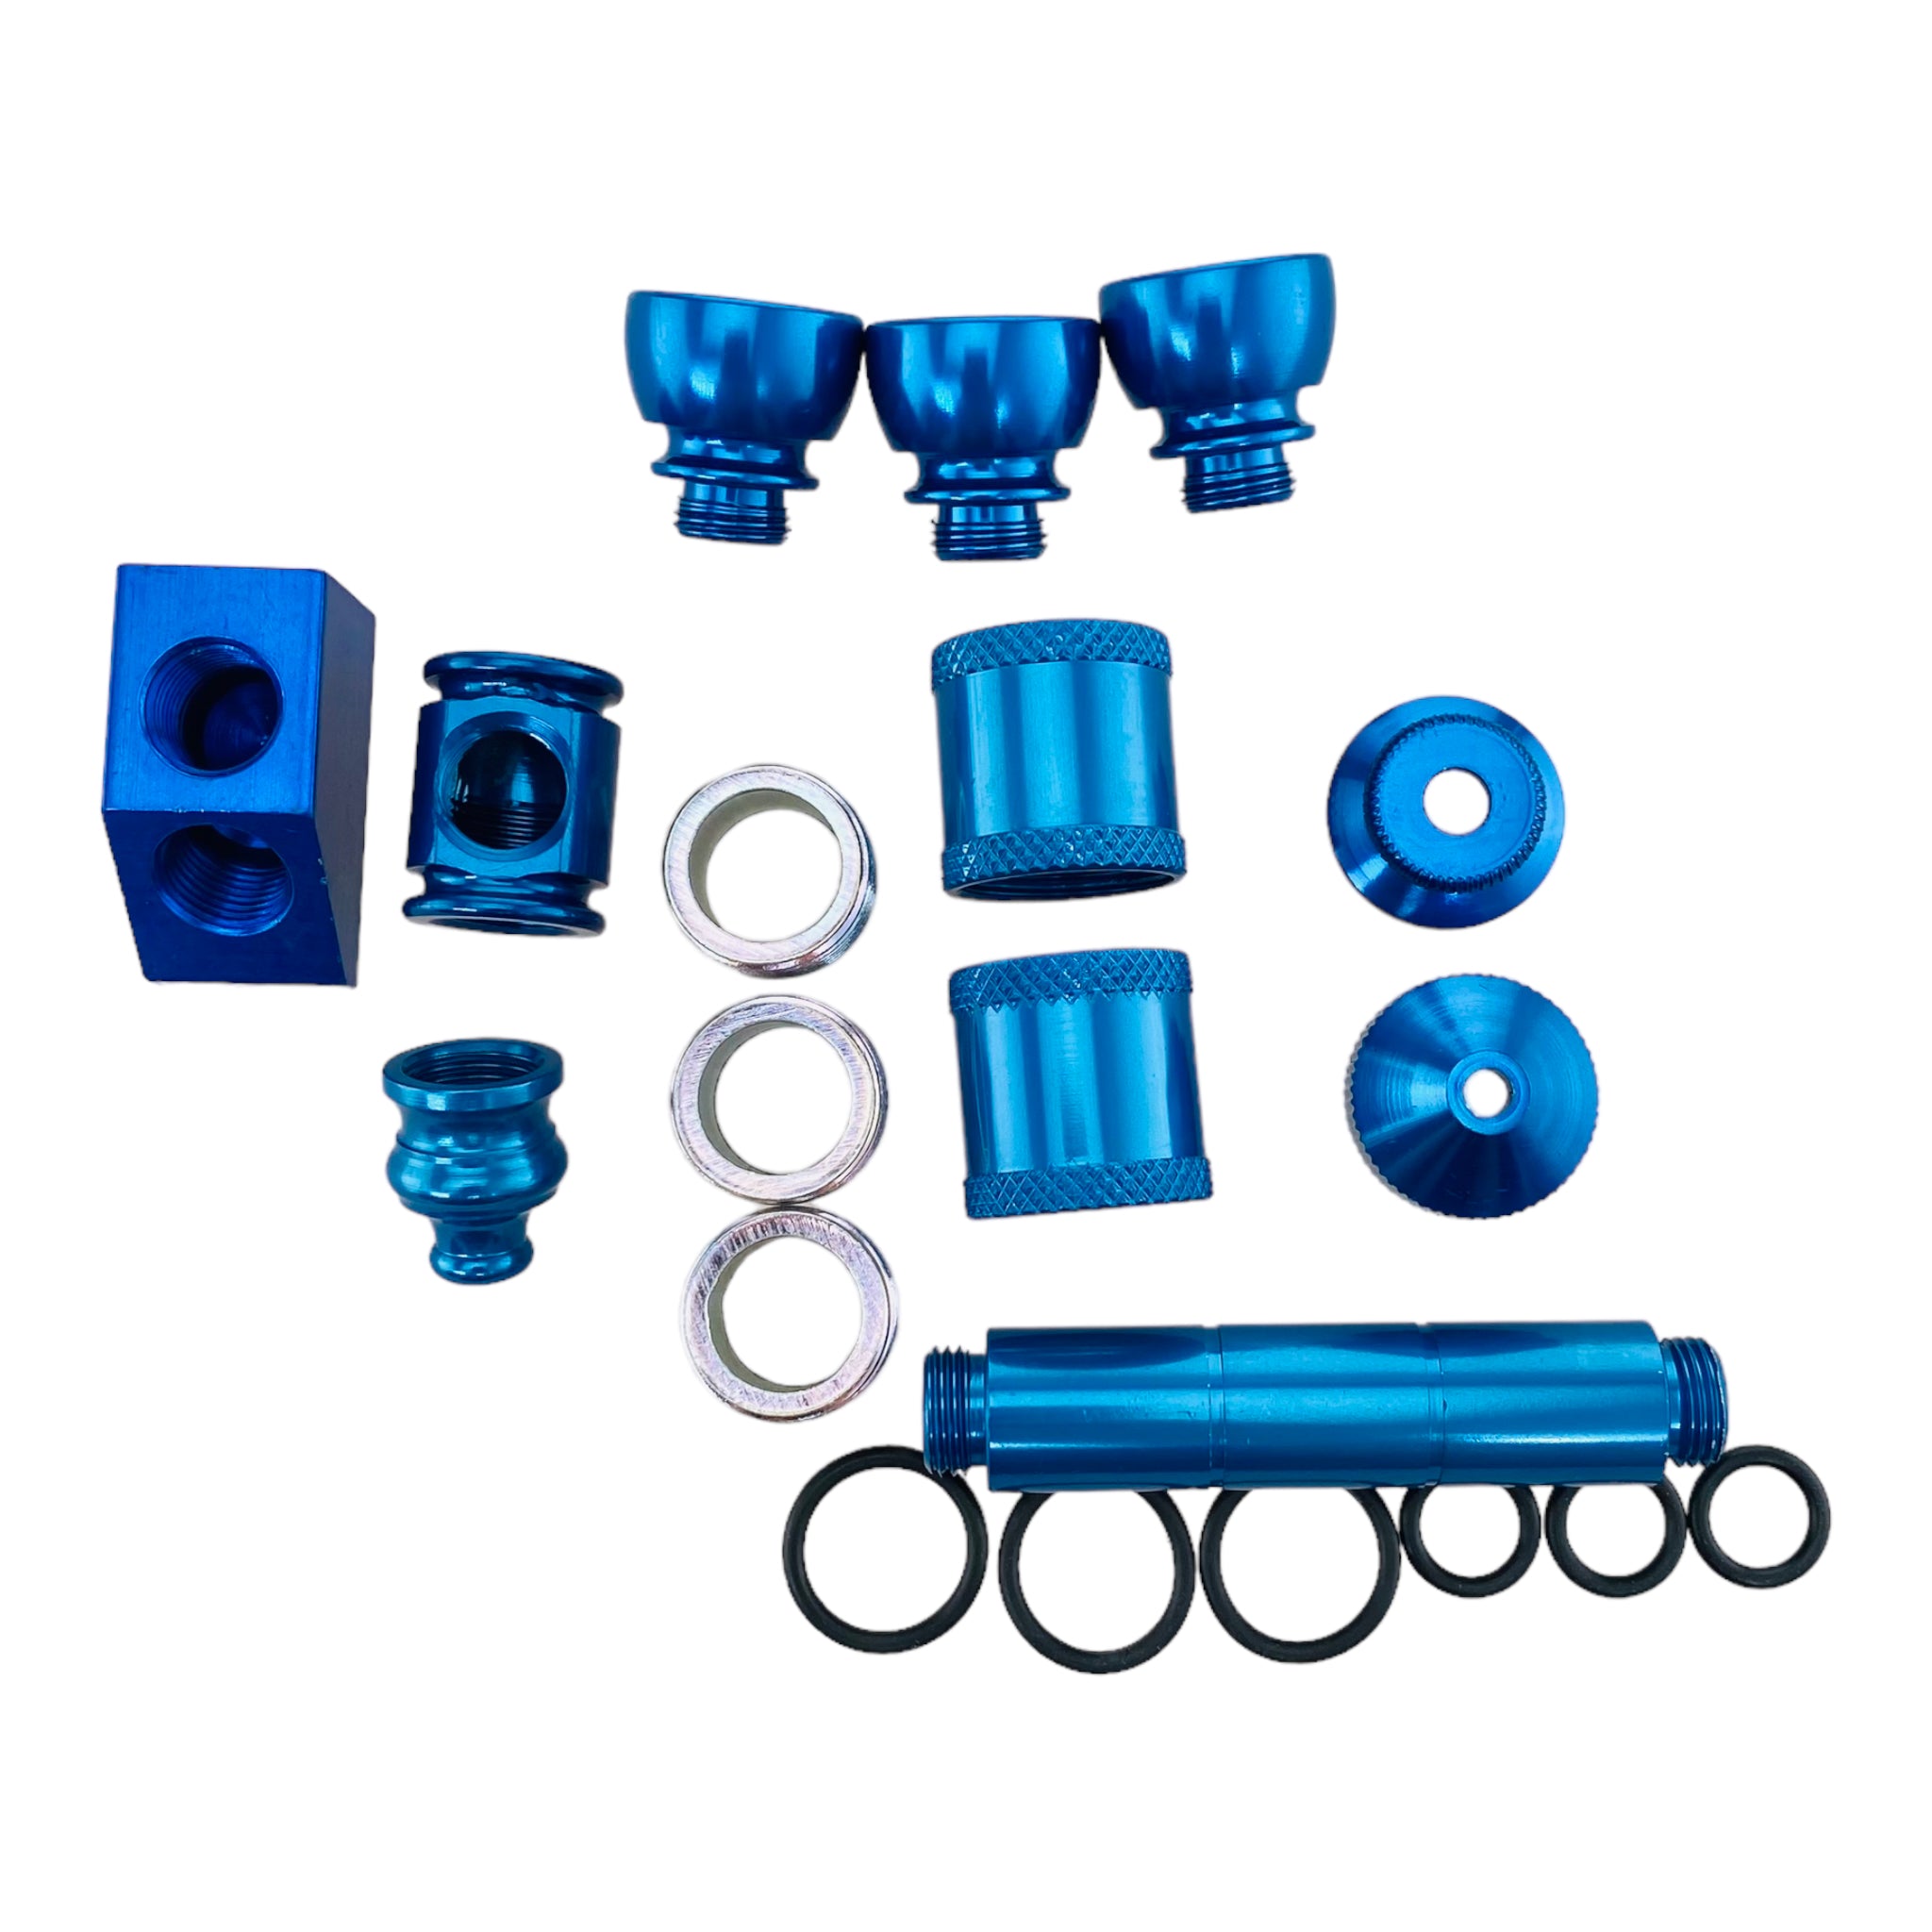 Aluminum Metal Pipe Makers Kit in Blue